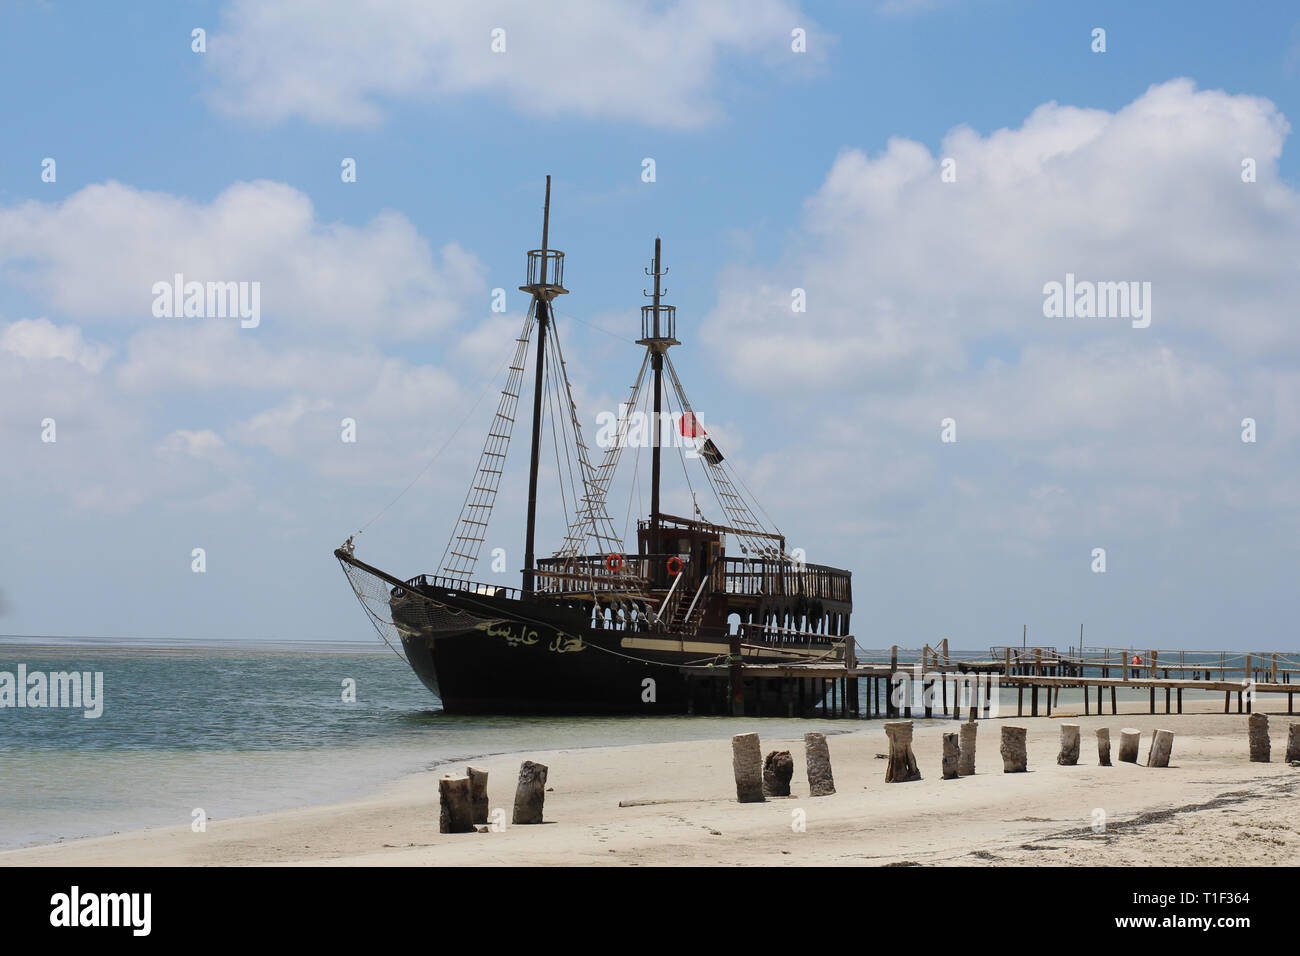 La nave dei pirati sull'isola di Djerba, Tunisia. Turista nave pirata per intrattenere gli ospiti dell'isola. Isola di Djerba. La Tunisia. Il Nord Africa. Foto Stock